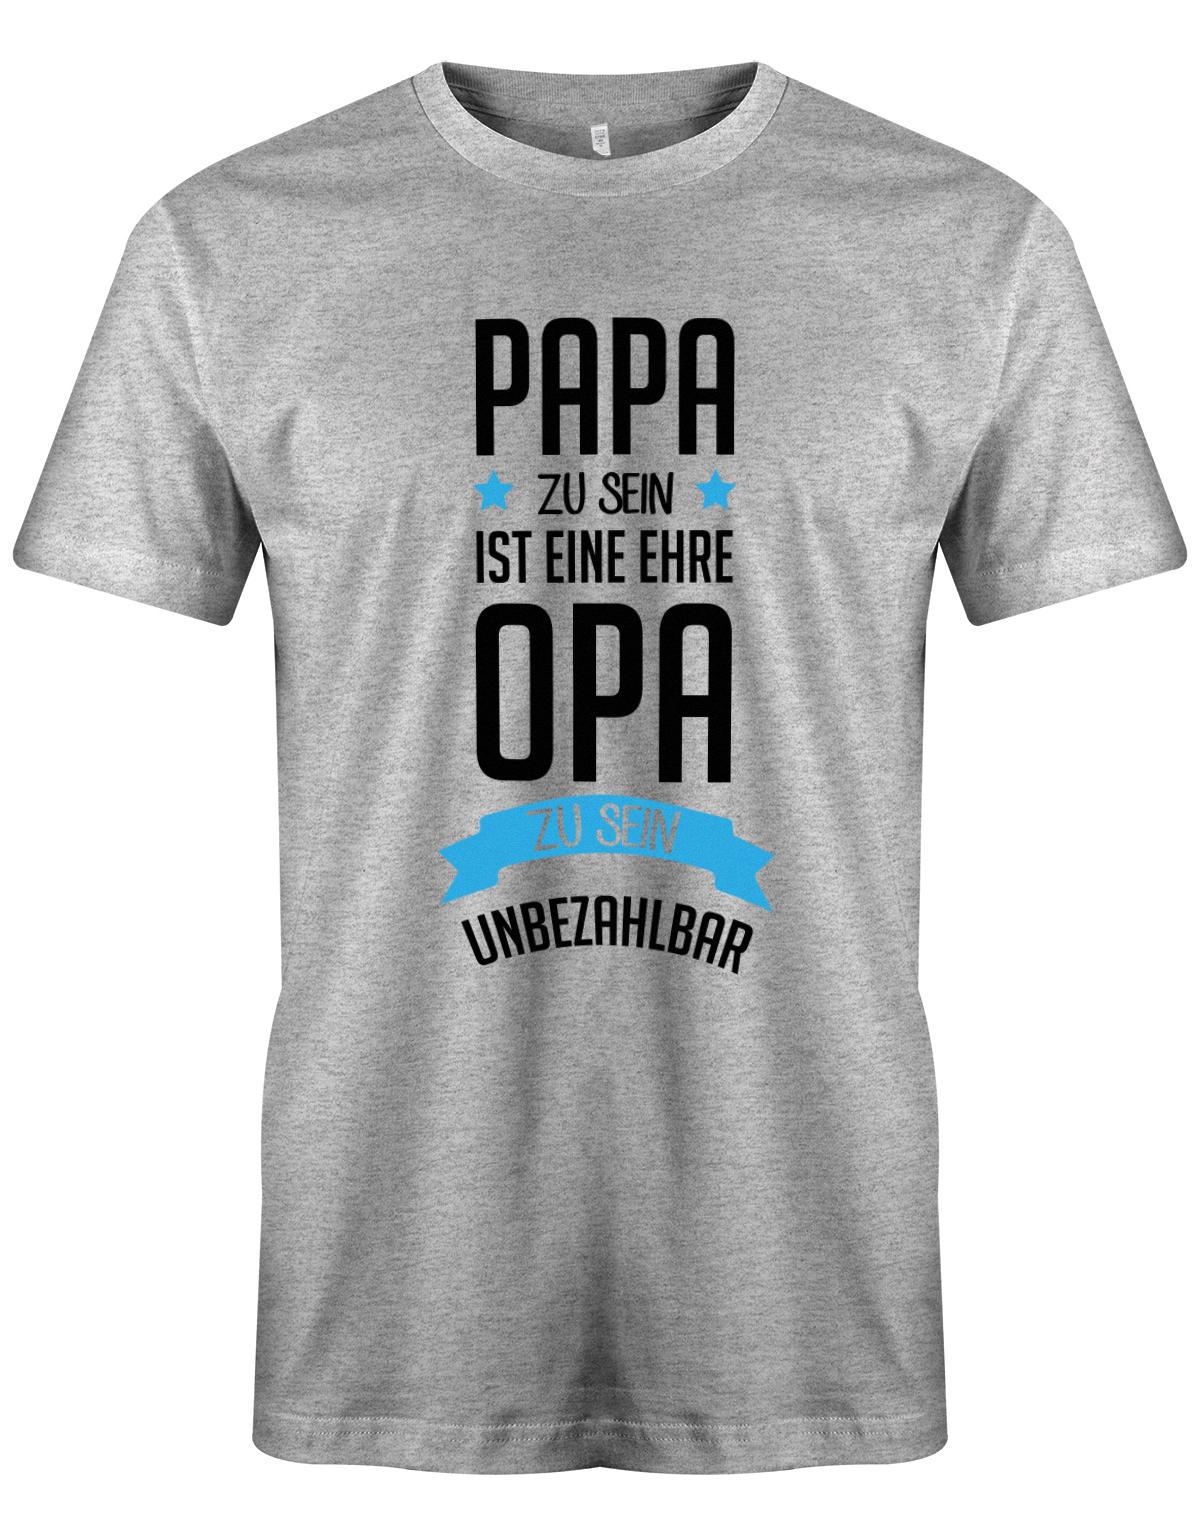 Opa T-Shirt Spruch für den werdenden Opa. Papa zu sein, ist eine Ehre, Opa zu sein unbezahlbar. Grau